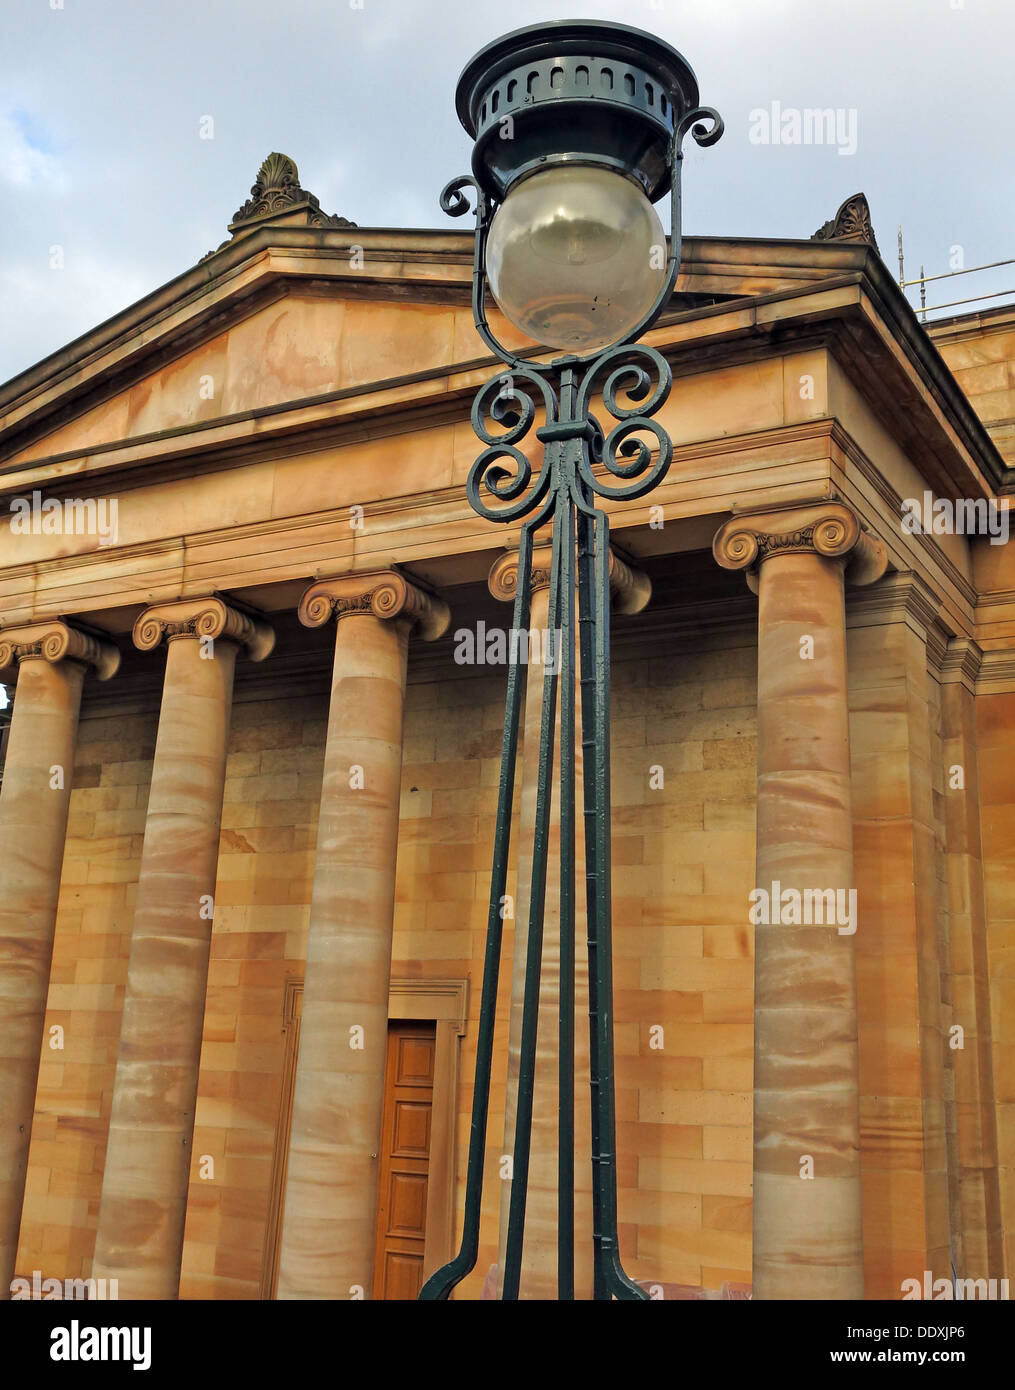 Les Galeries nationales d'Écosse Edinburgh City, sur la butte, UK Banque D'Images